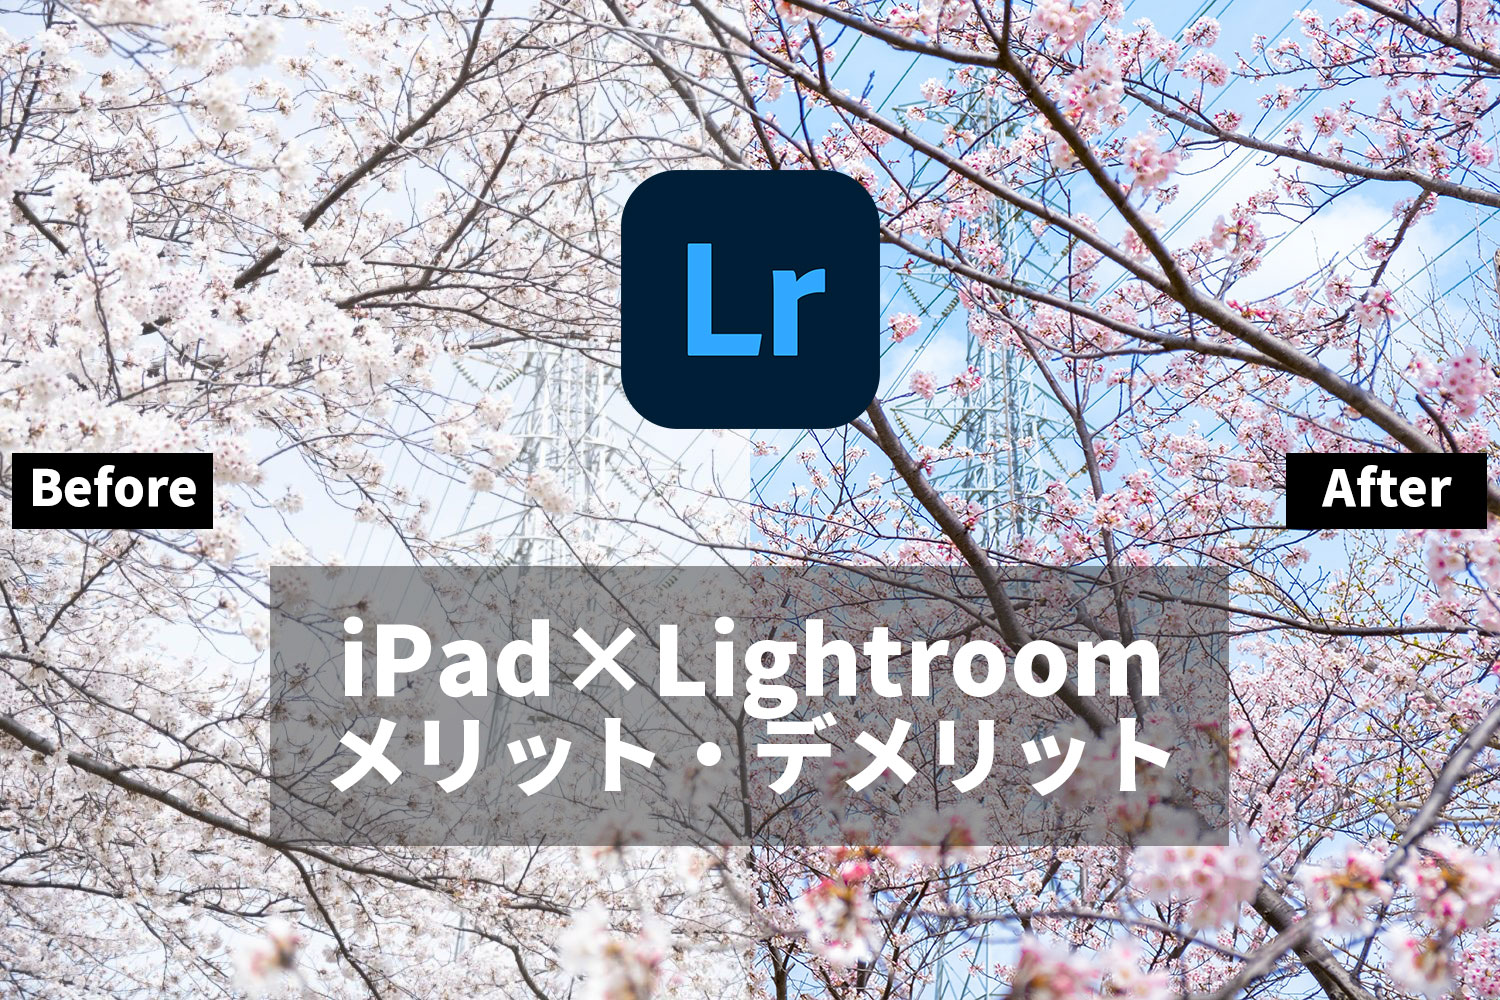 iPadとLightroomで写真現像をするメリットとデメリット。